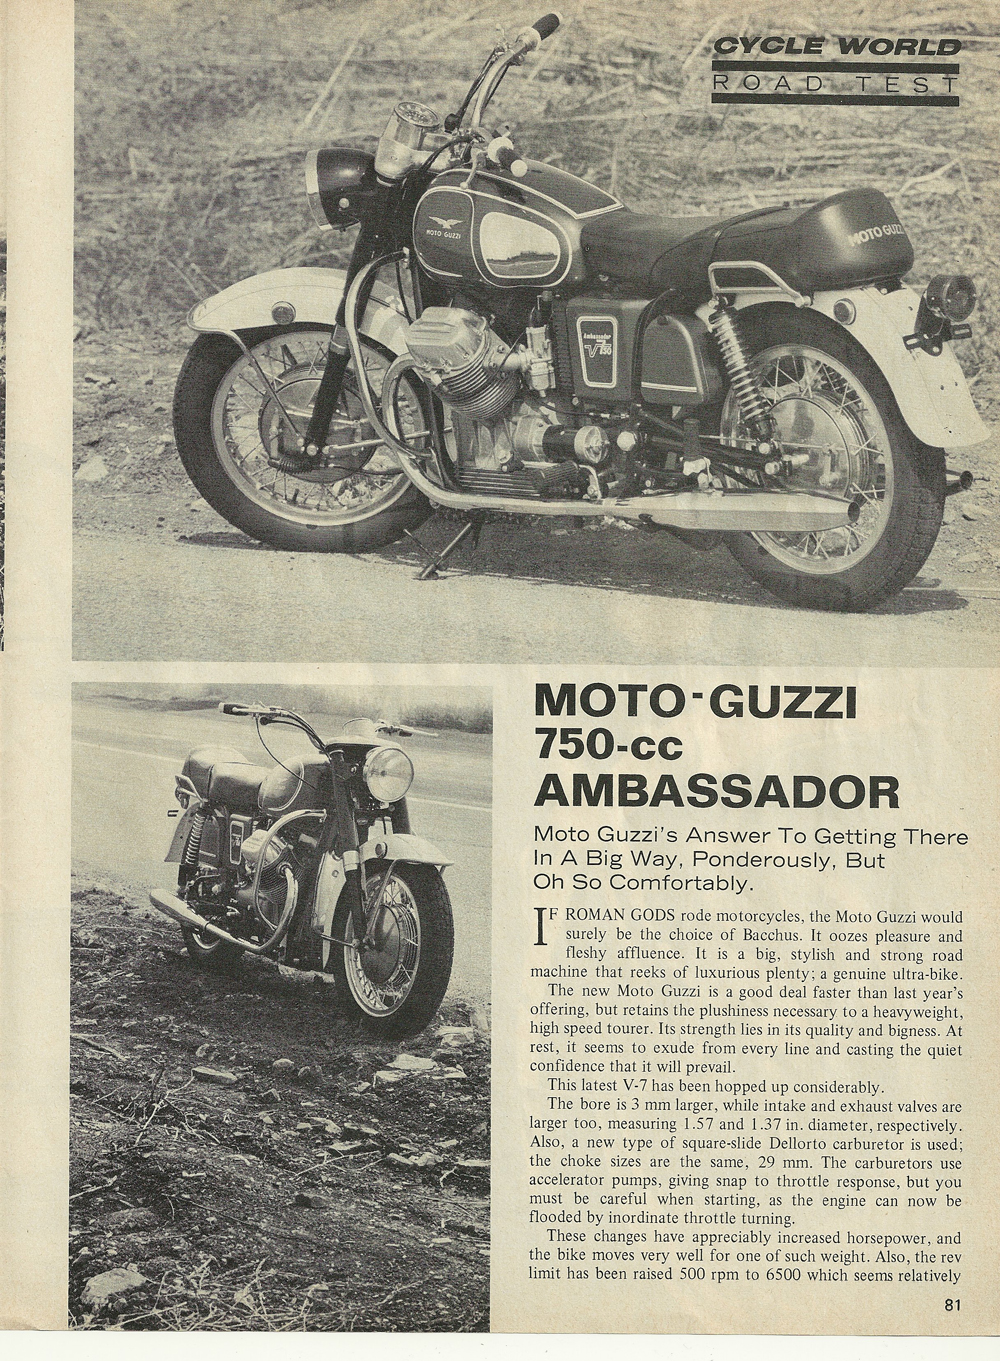 1969 Μoto Guzzi 750 Ambassador